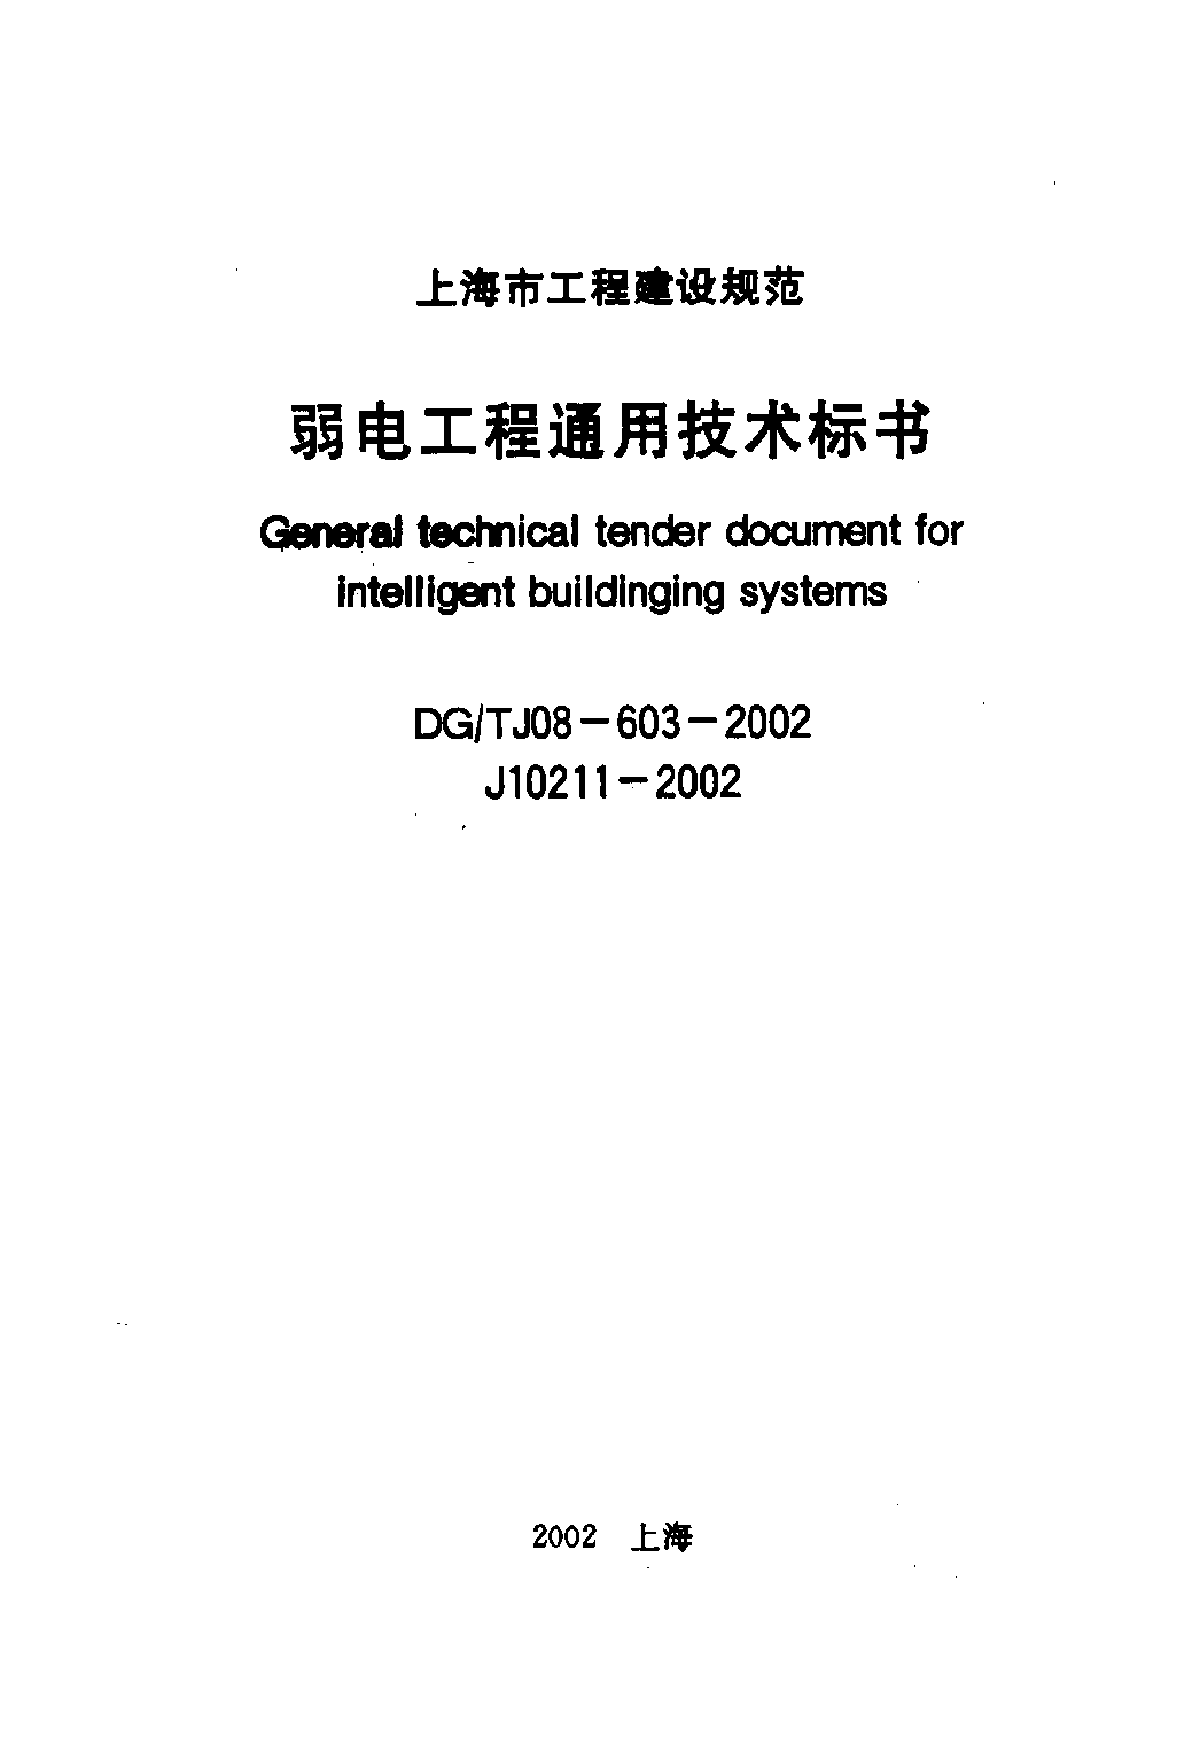 DG T J08-014-2002 弱电工程通用技术标书